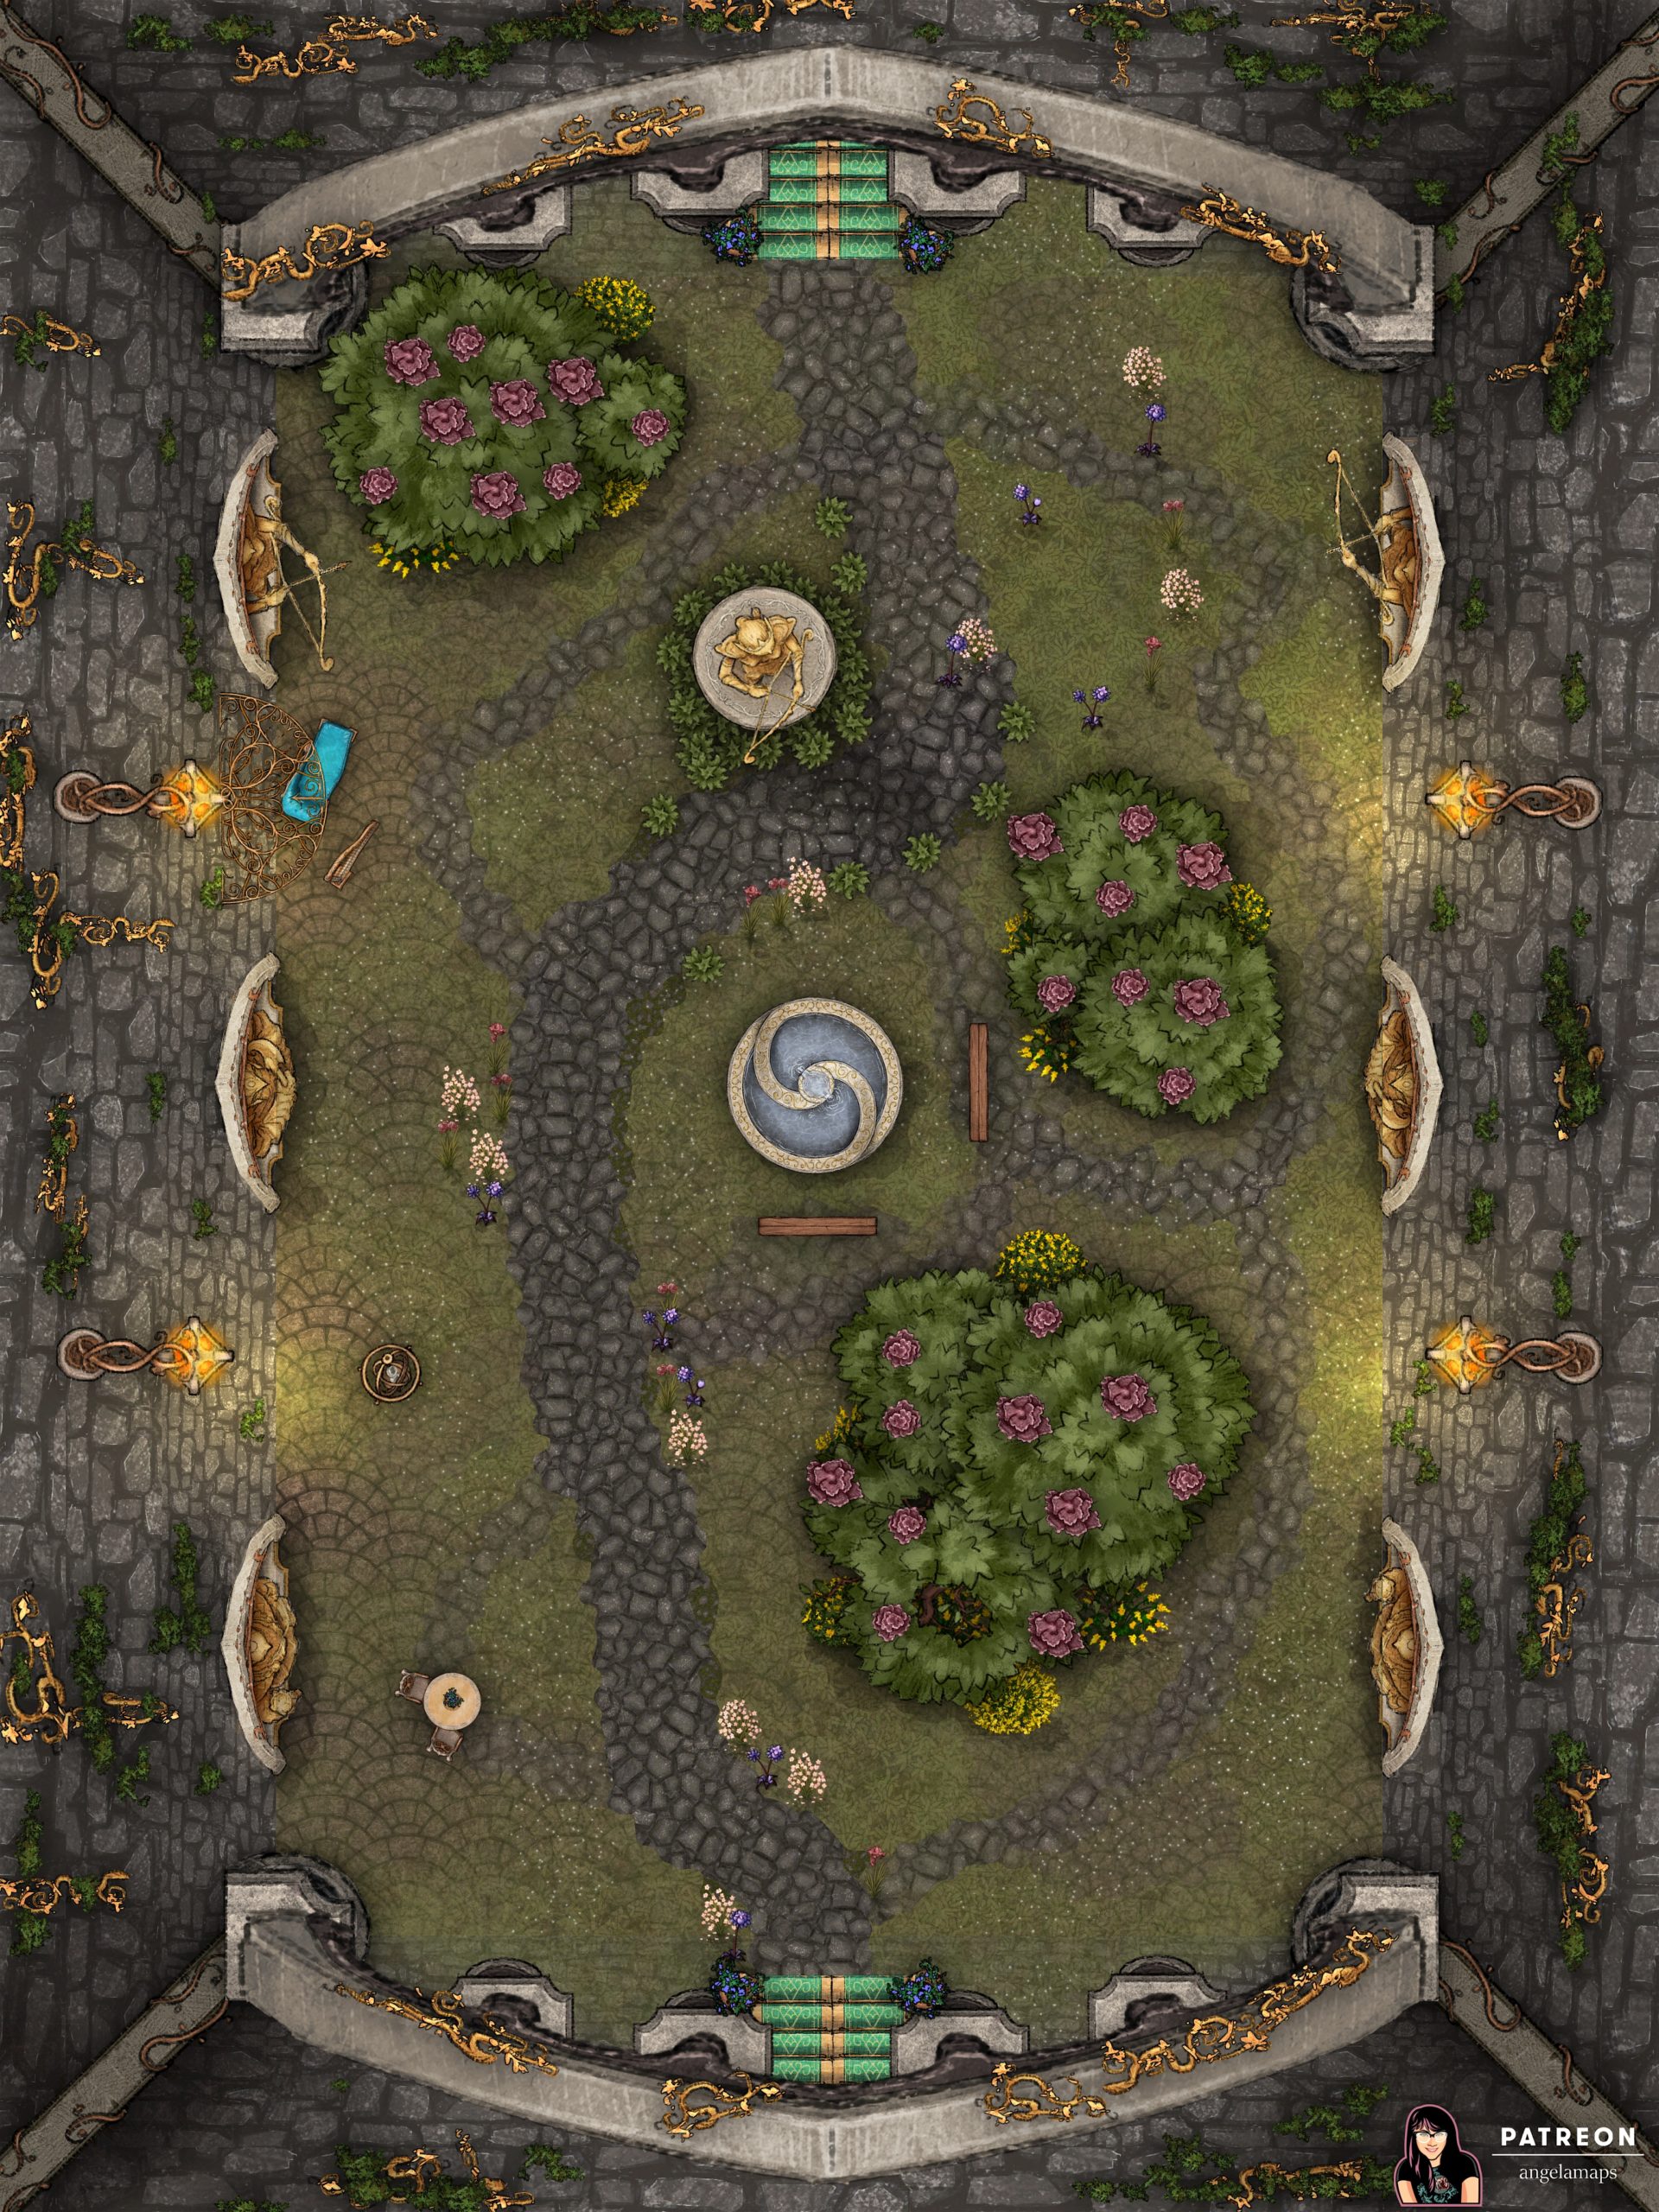 Beautiful elven courtyard encounter battlemap